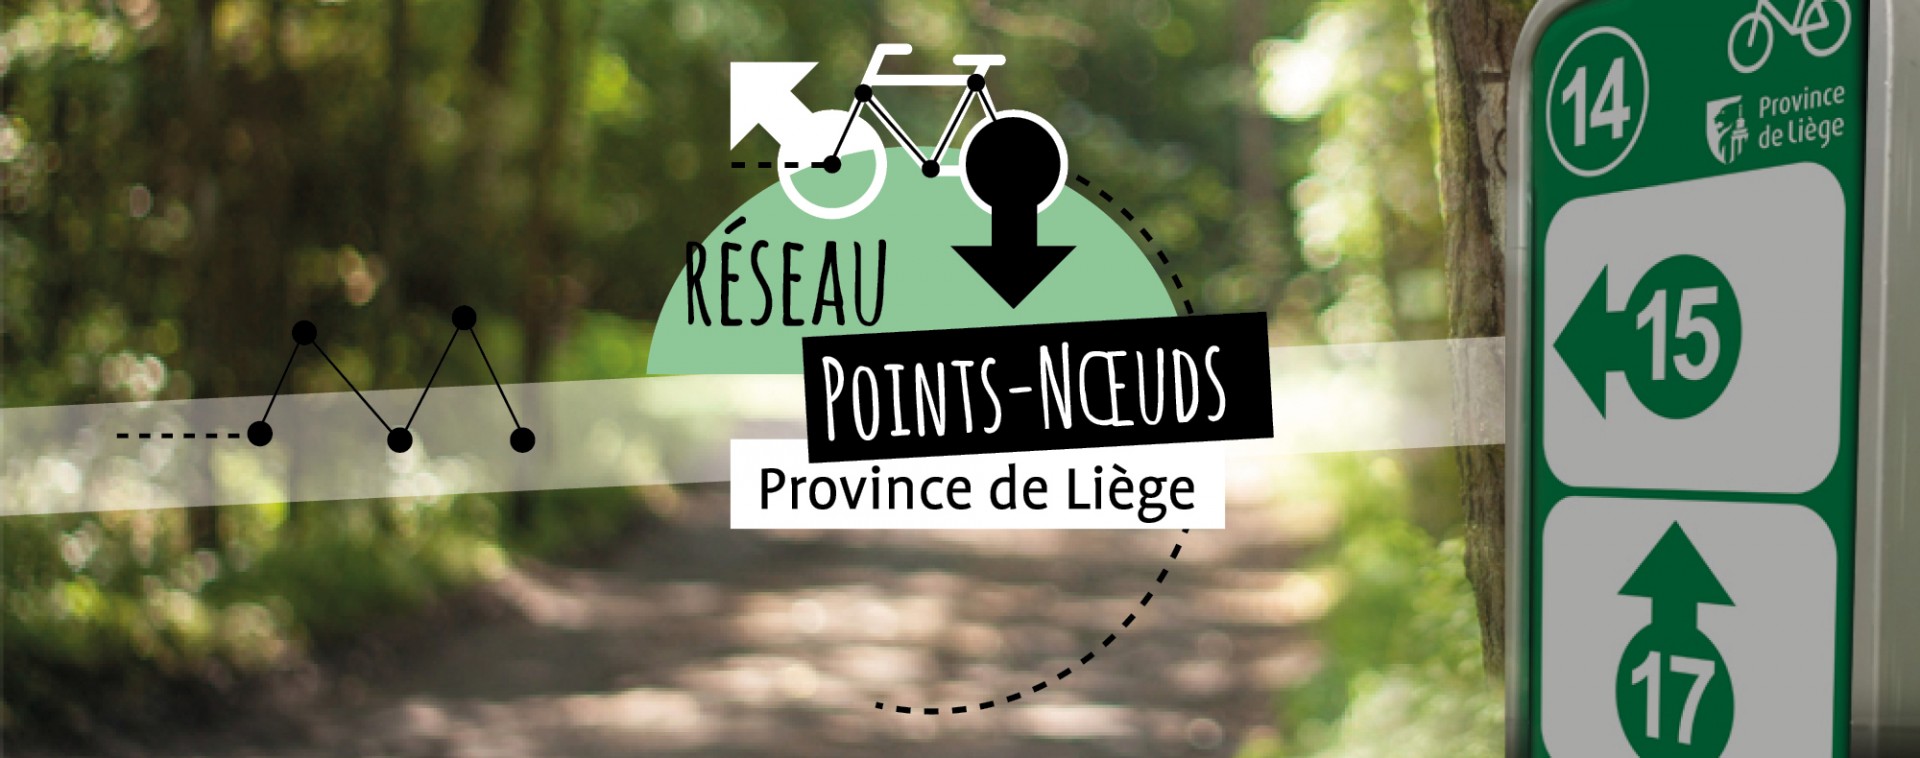 Réseau vélo points-nœuds Province de Liège | © FTPL